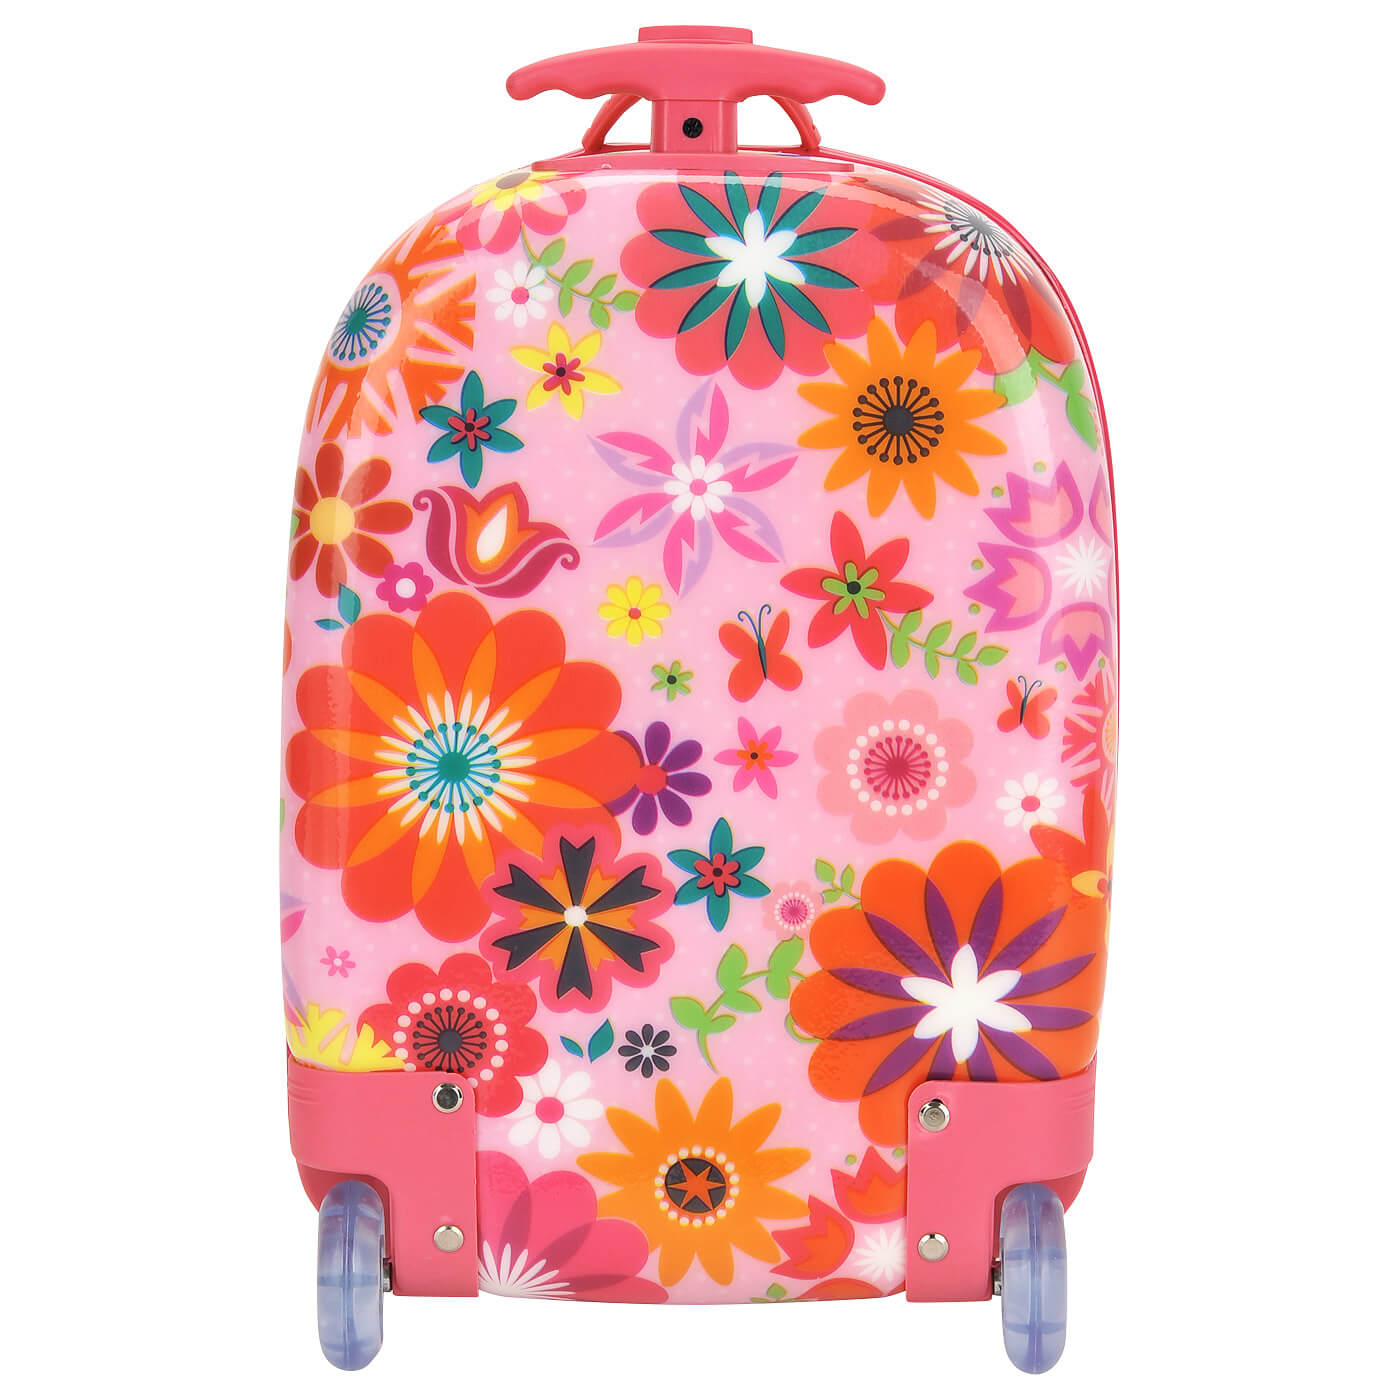 Детский чемодан Bouncie LG-16FL-P01 Cappe Upright 44 см Flowers